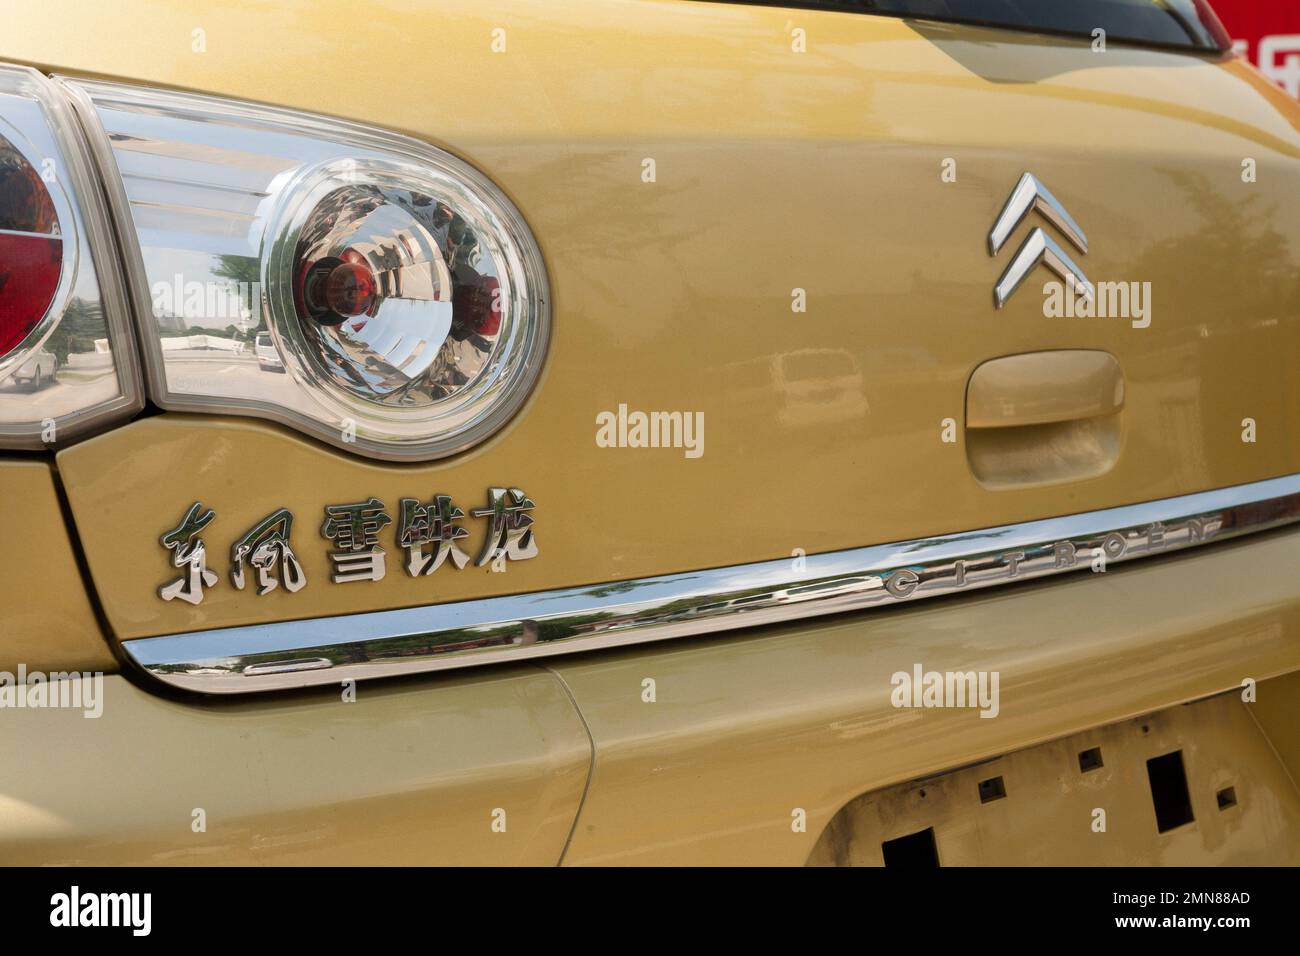 Posteriore con targa mancante, e modello scritto in caratteri cinesi / scritta Citroen auto / veicolo in Cina. Xian, Cina. (125) Foto Stock